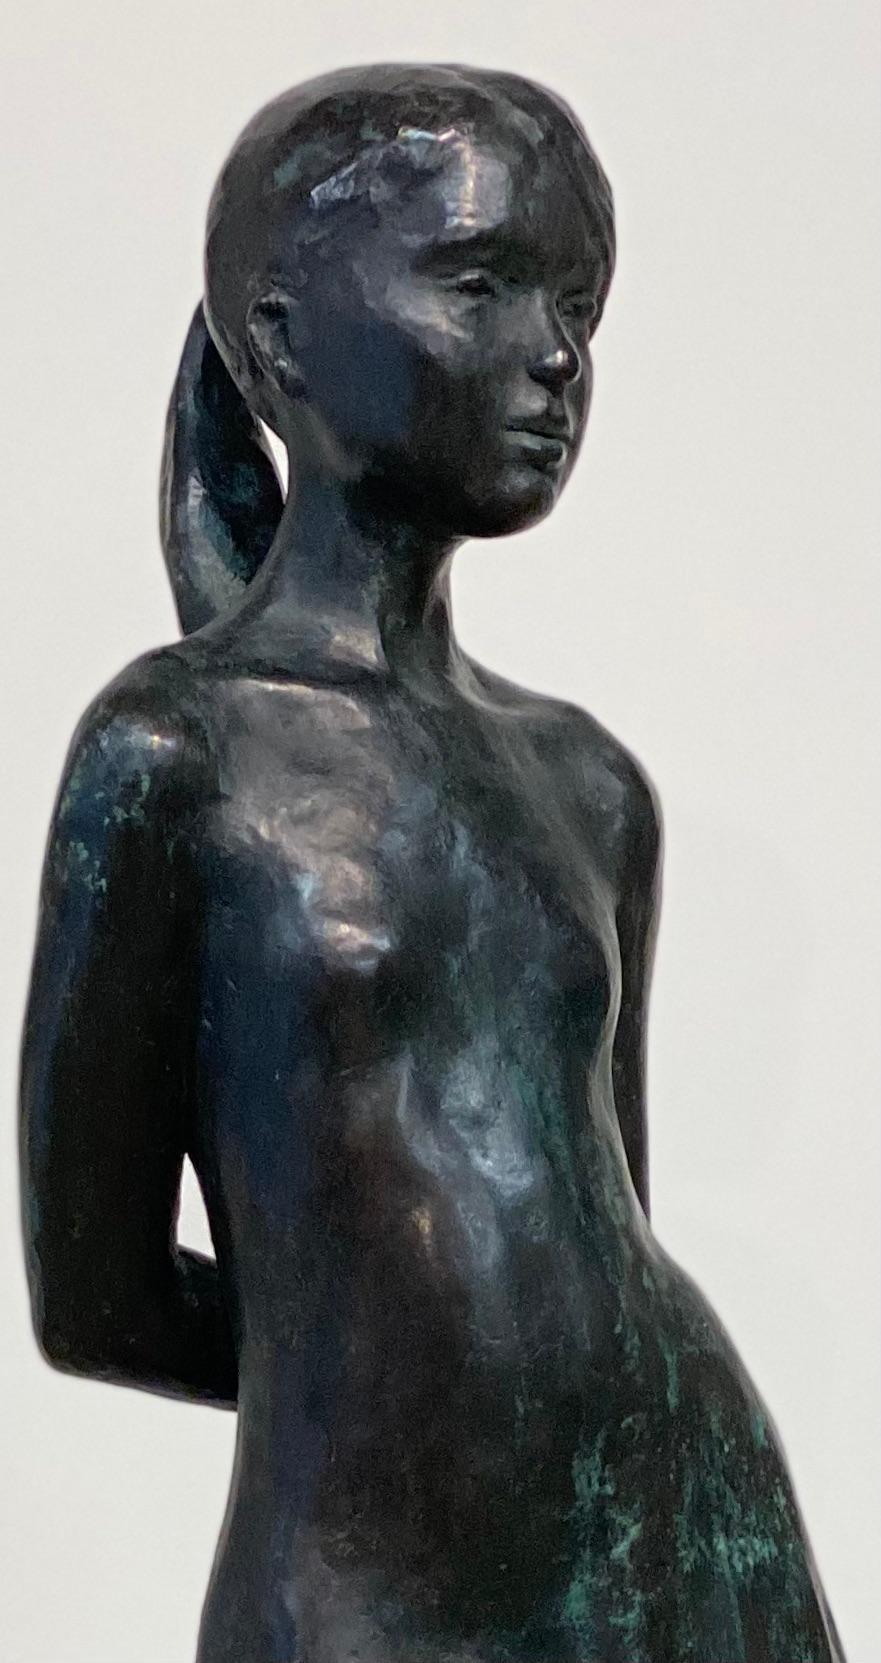 Marjolein- Bronzeskulptur eines jungen Mädchens aus dem 21. Jahrhundert – Sculpture von Wim van der Kraan